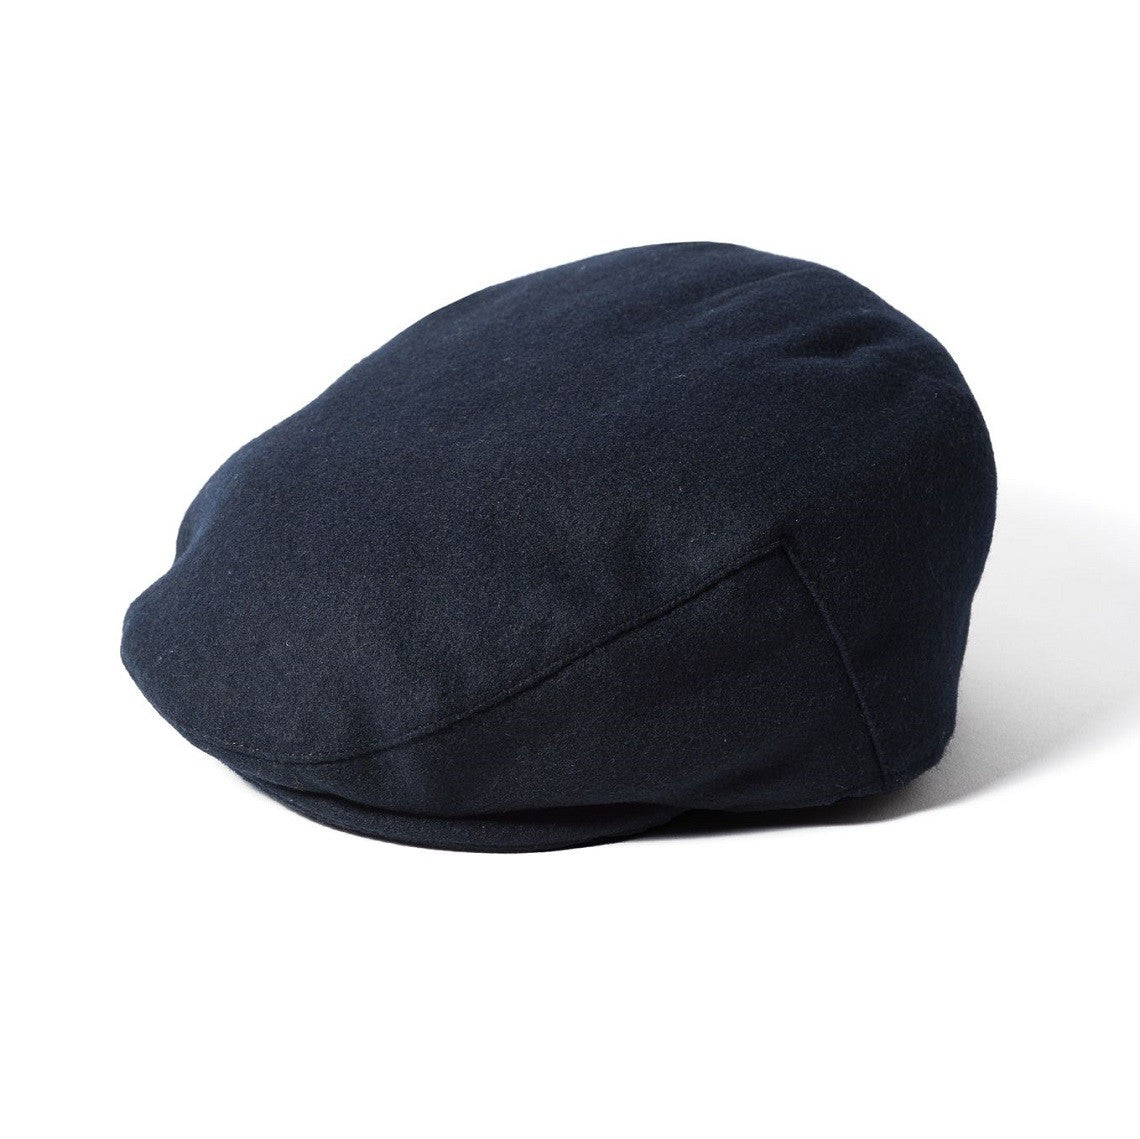 Failsworth Melton Flat Cap in Navy – The Hat Company